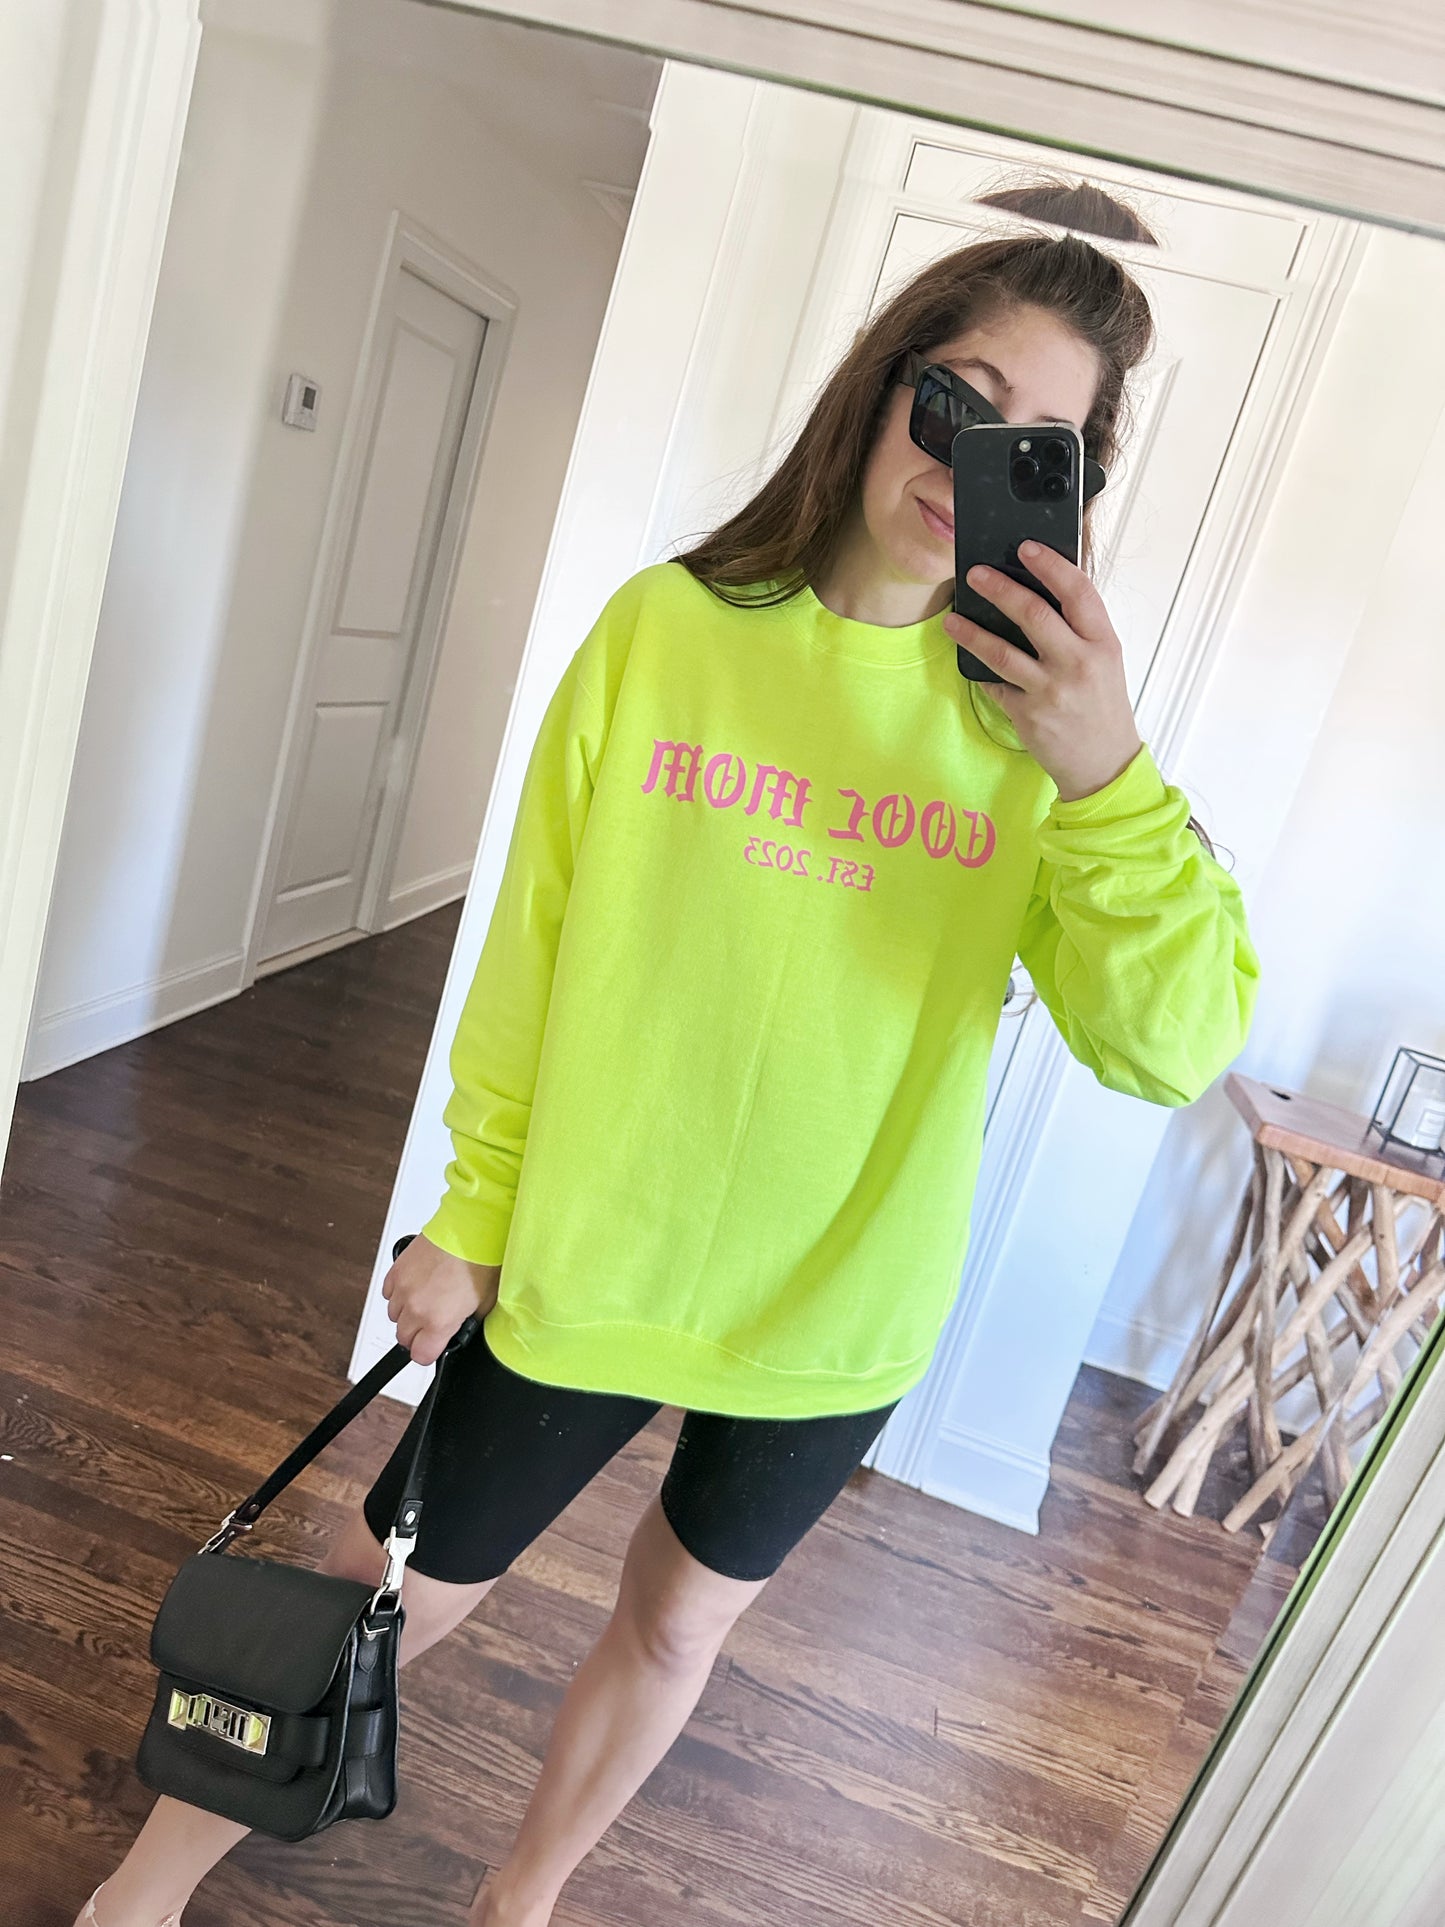 ESTABLISHED AF ♡ personalizable cool mom sweatshirt